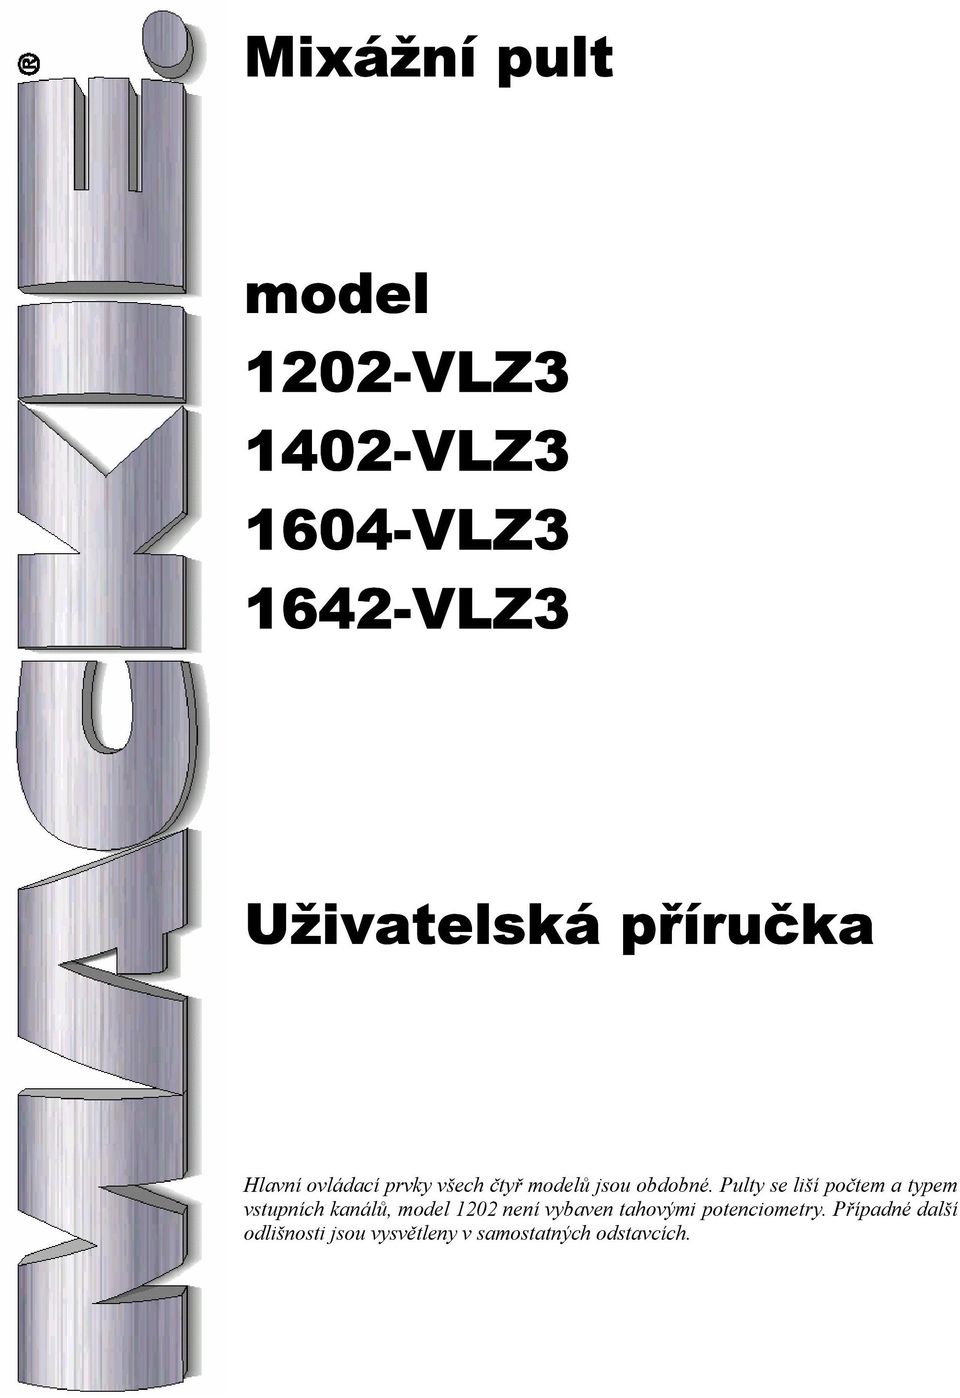 Pulty se liší počtem a typem vstupních kanálů, model 1202 není vybaven